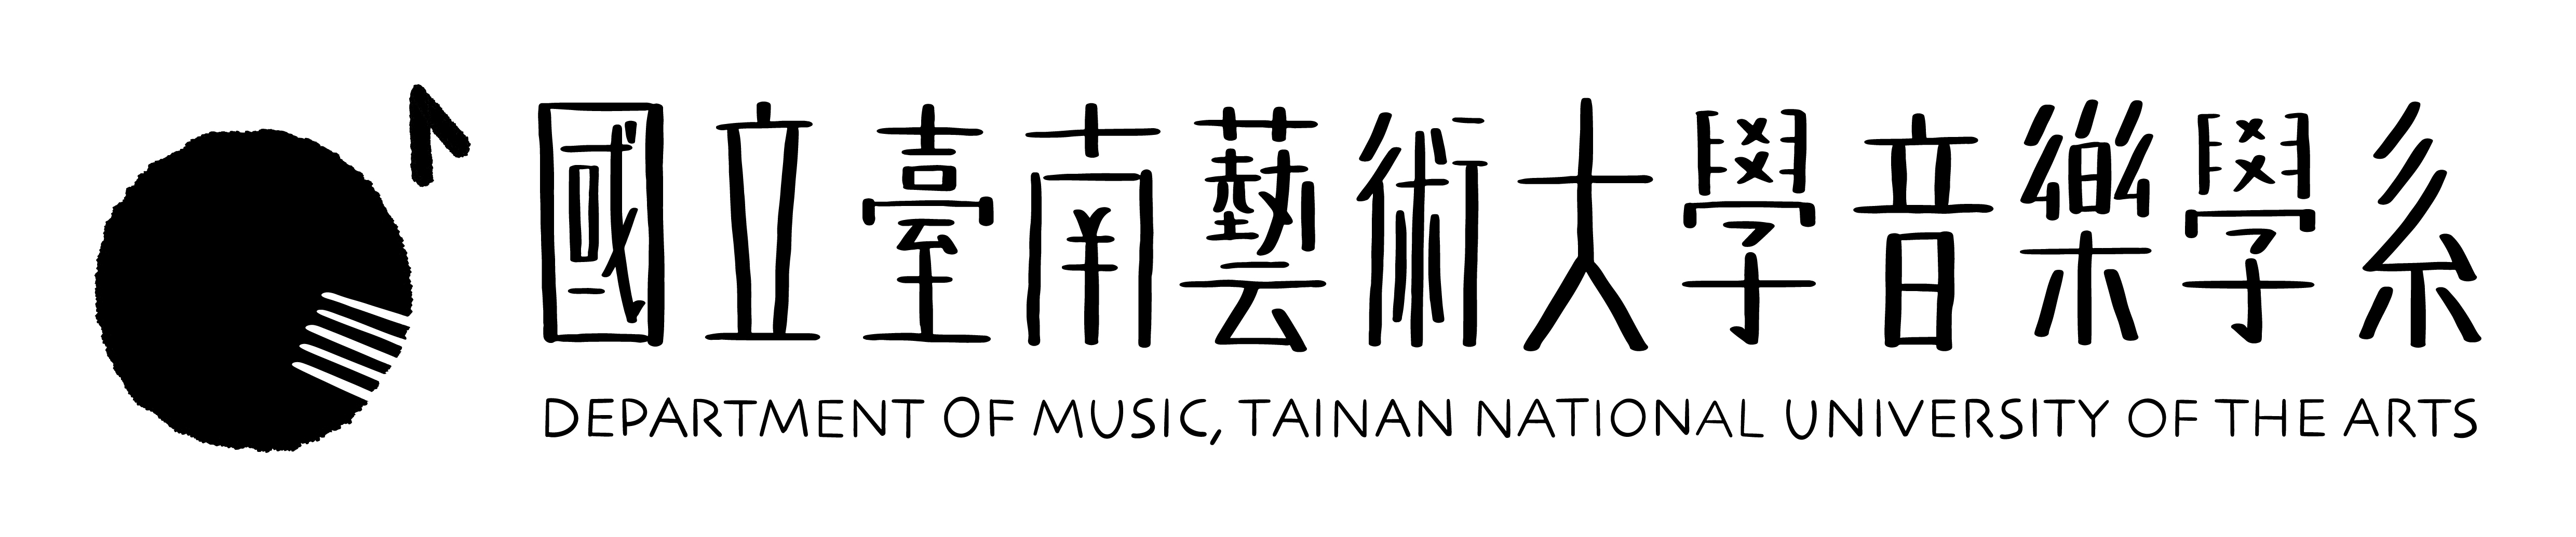 國立臺南藝術大學音樂學系